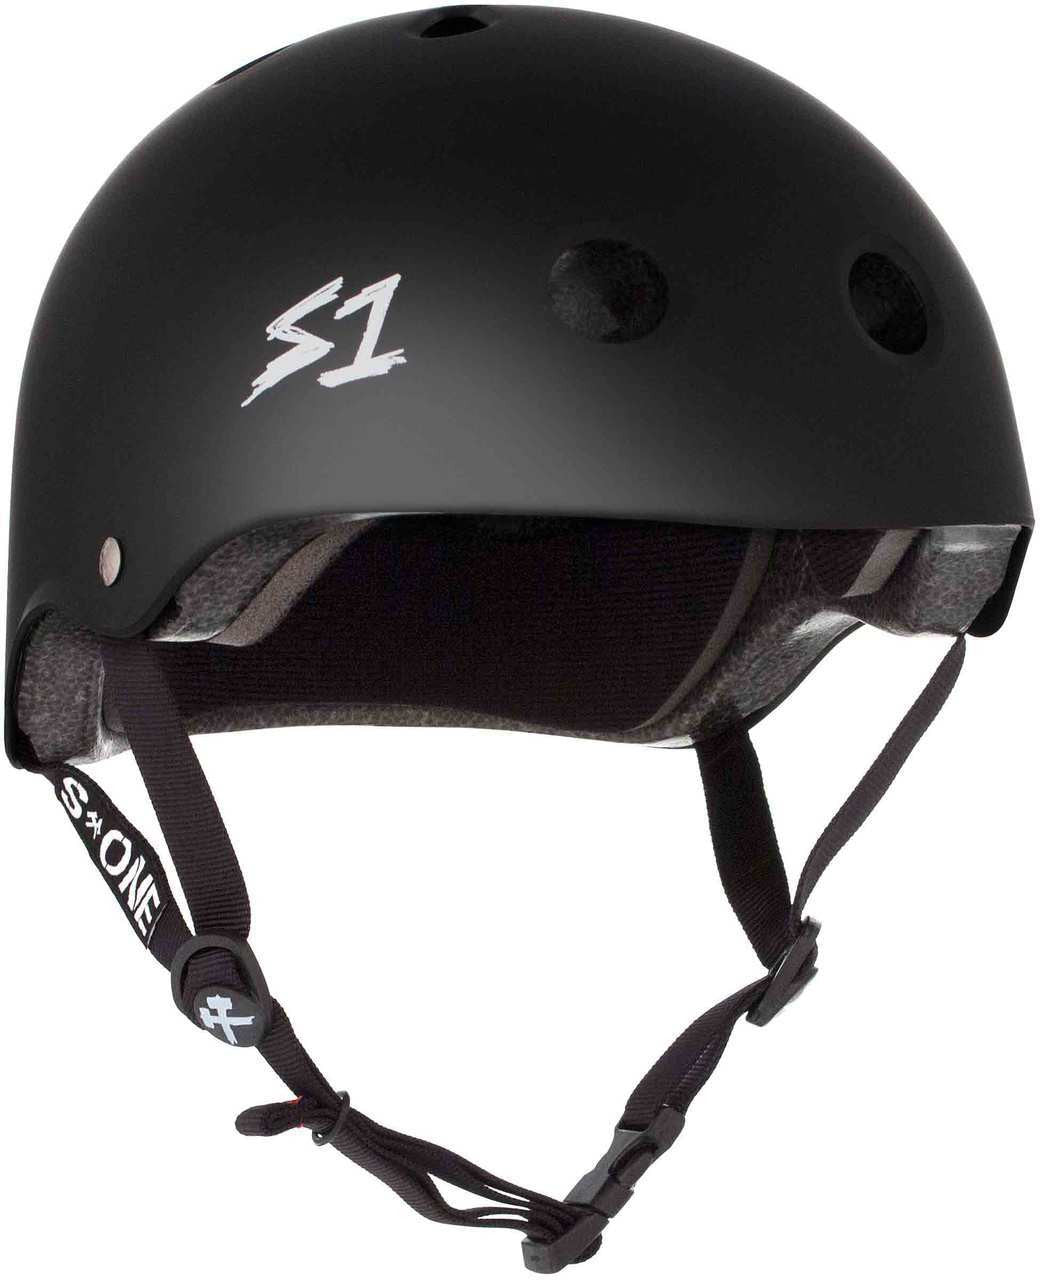 S One Lifer Helmet Skate - Black Matte